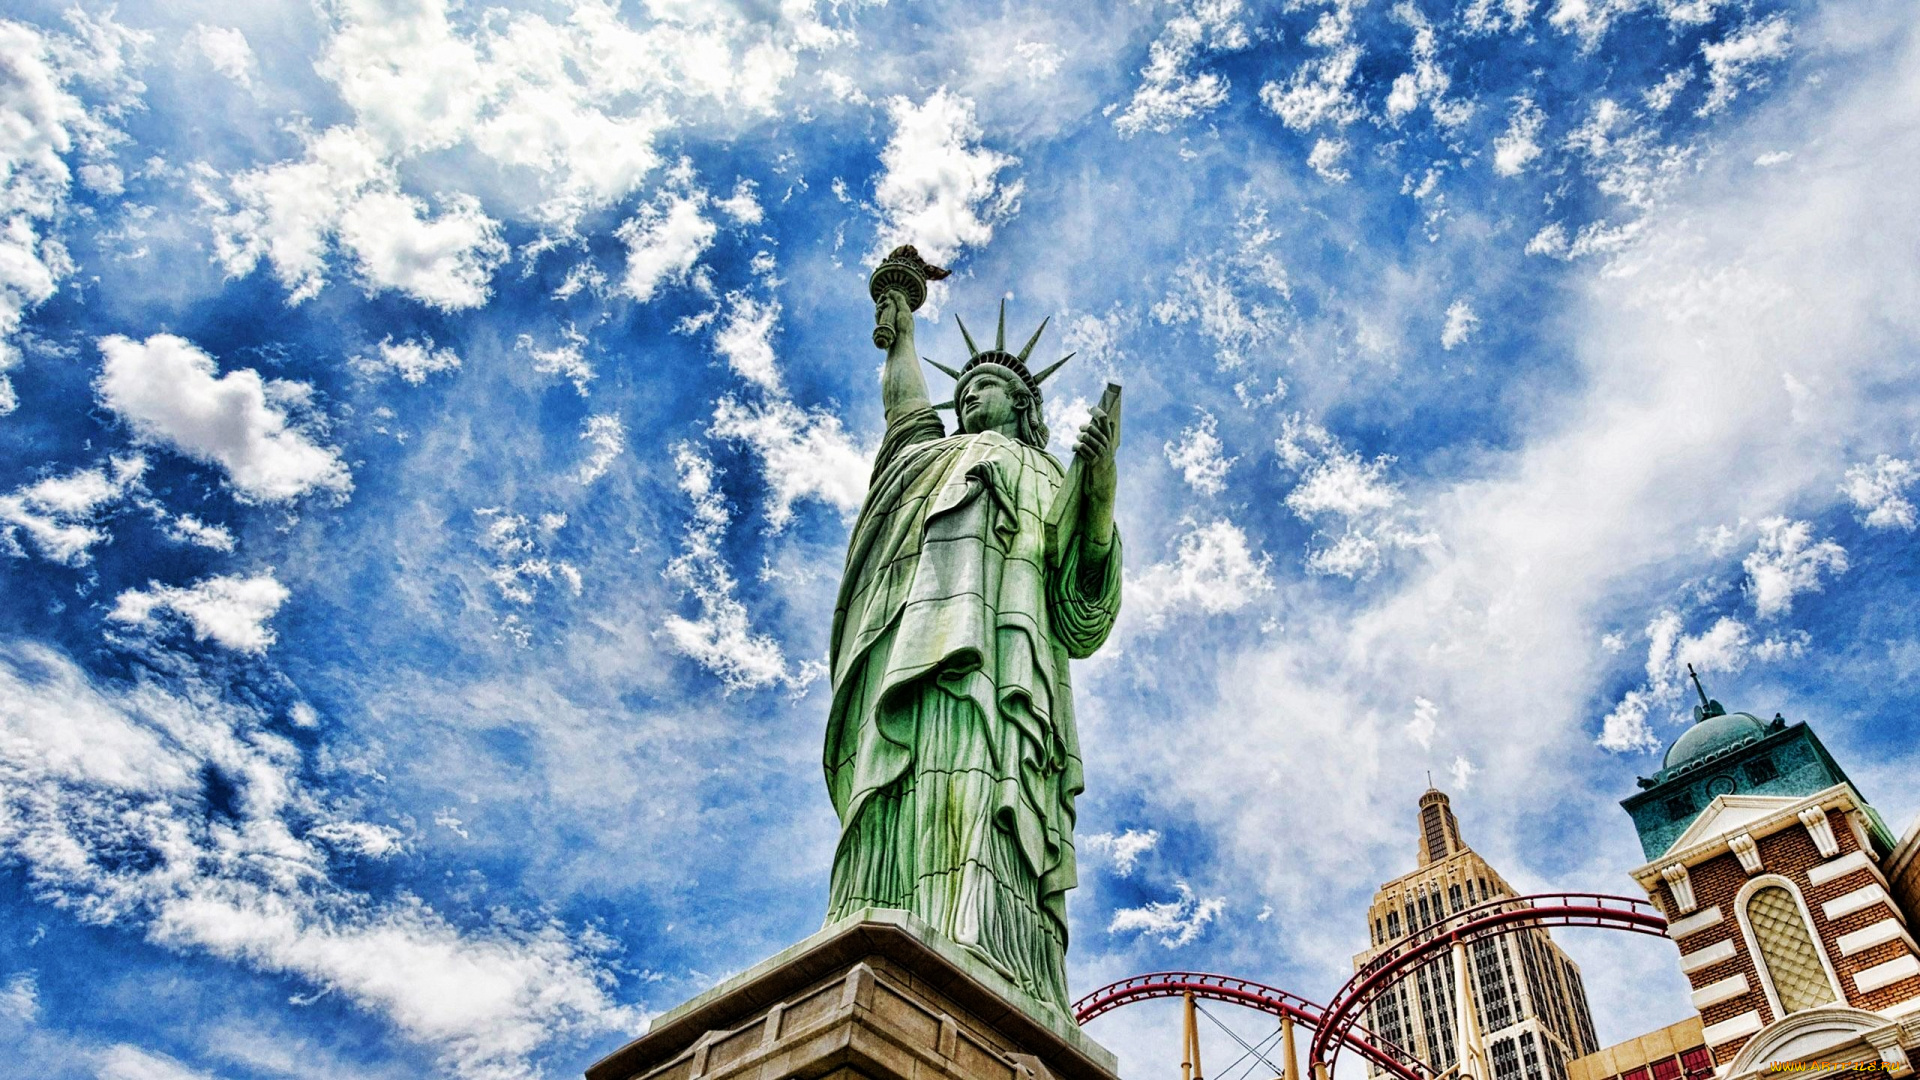 the, statue, of, liberty, города, нью, йорк, сша, статуя, свободы, нью-йорк